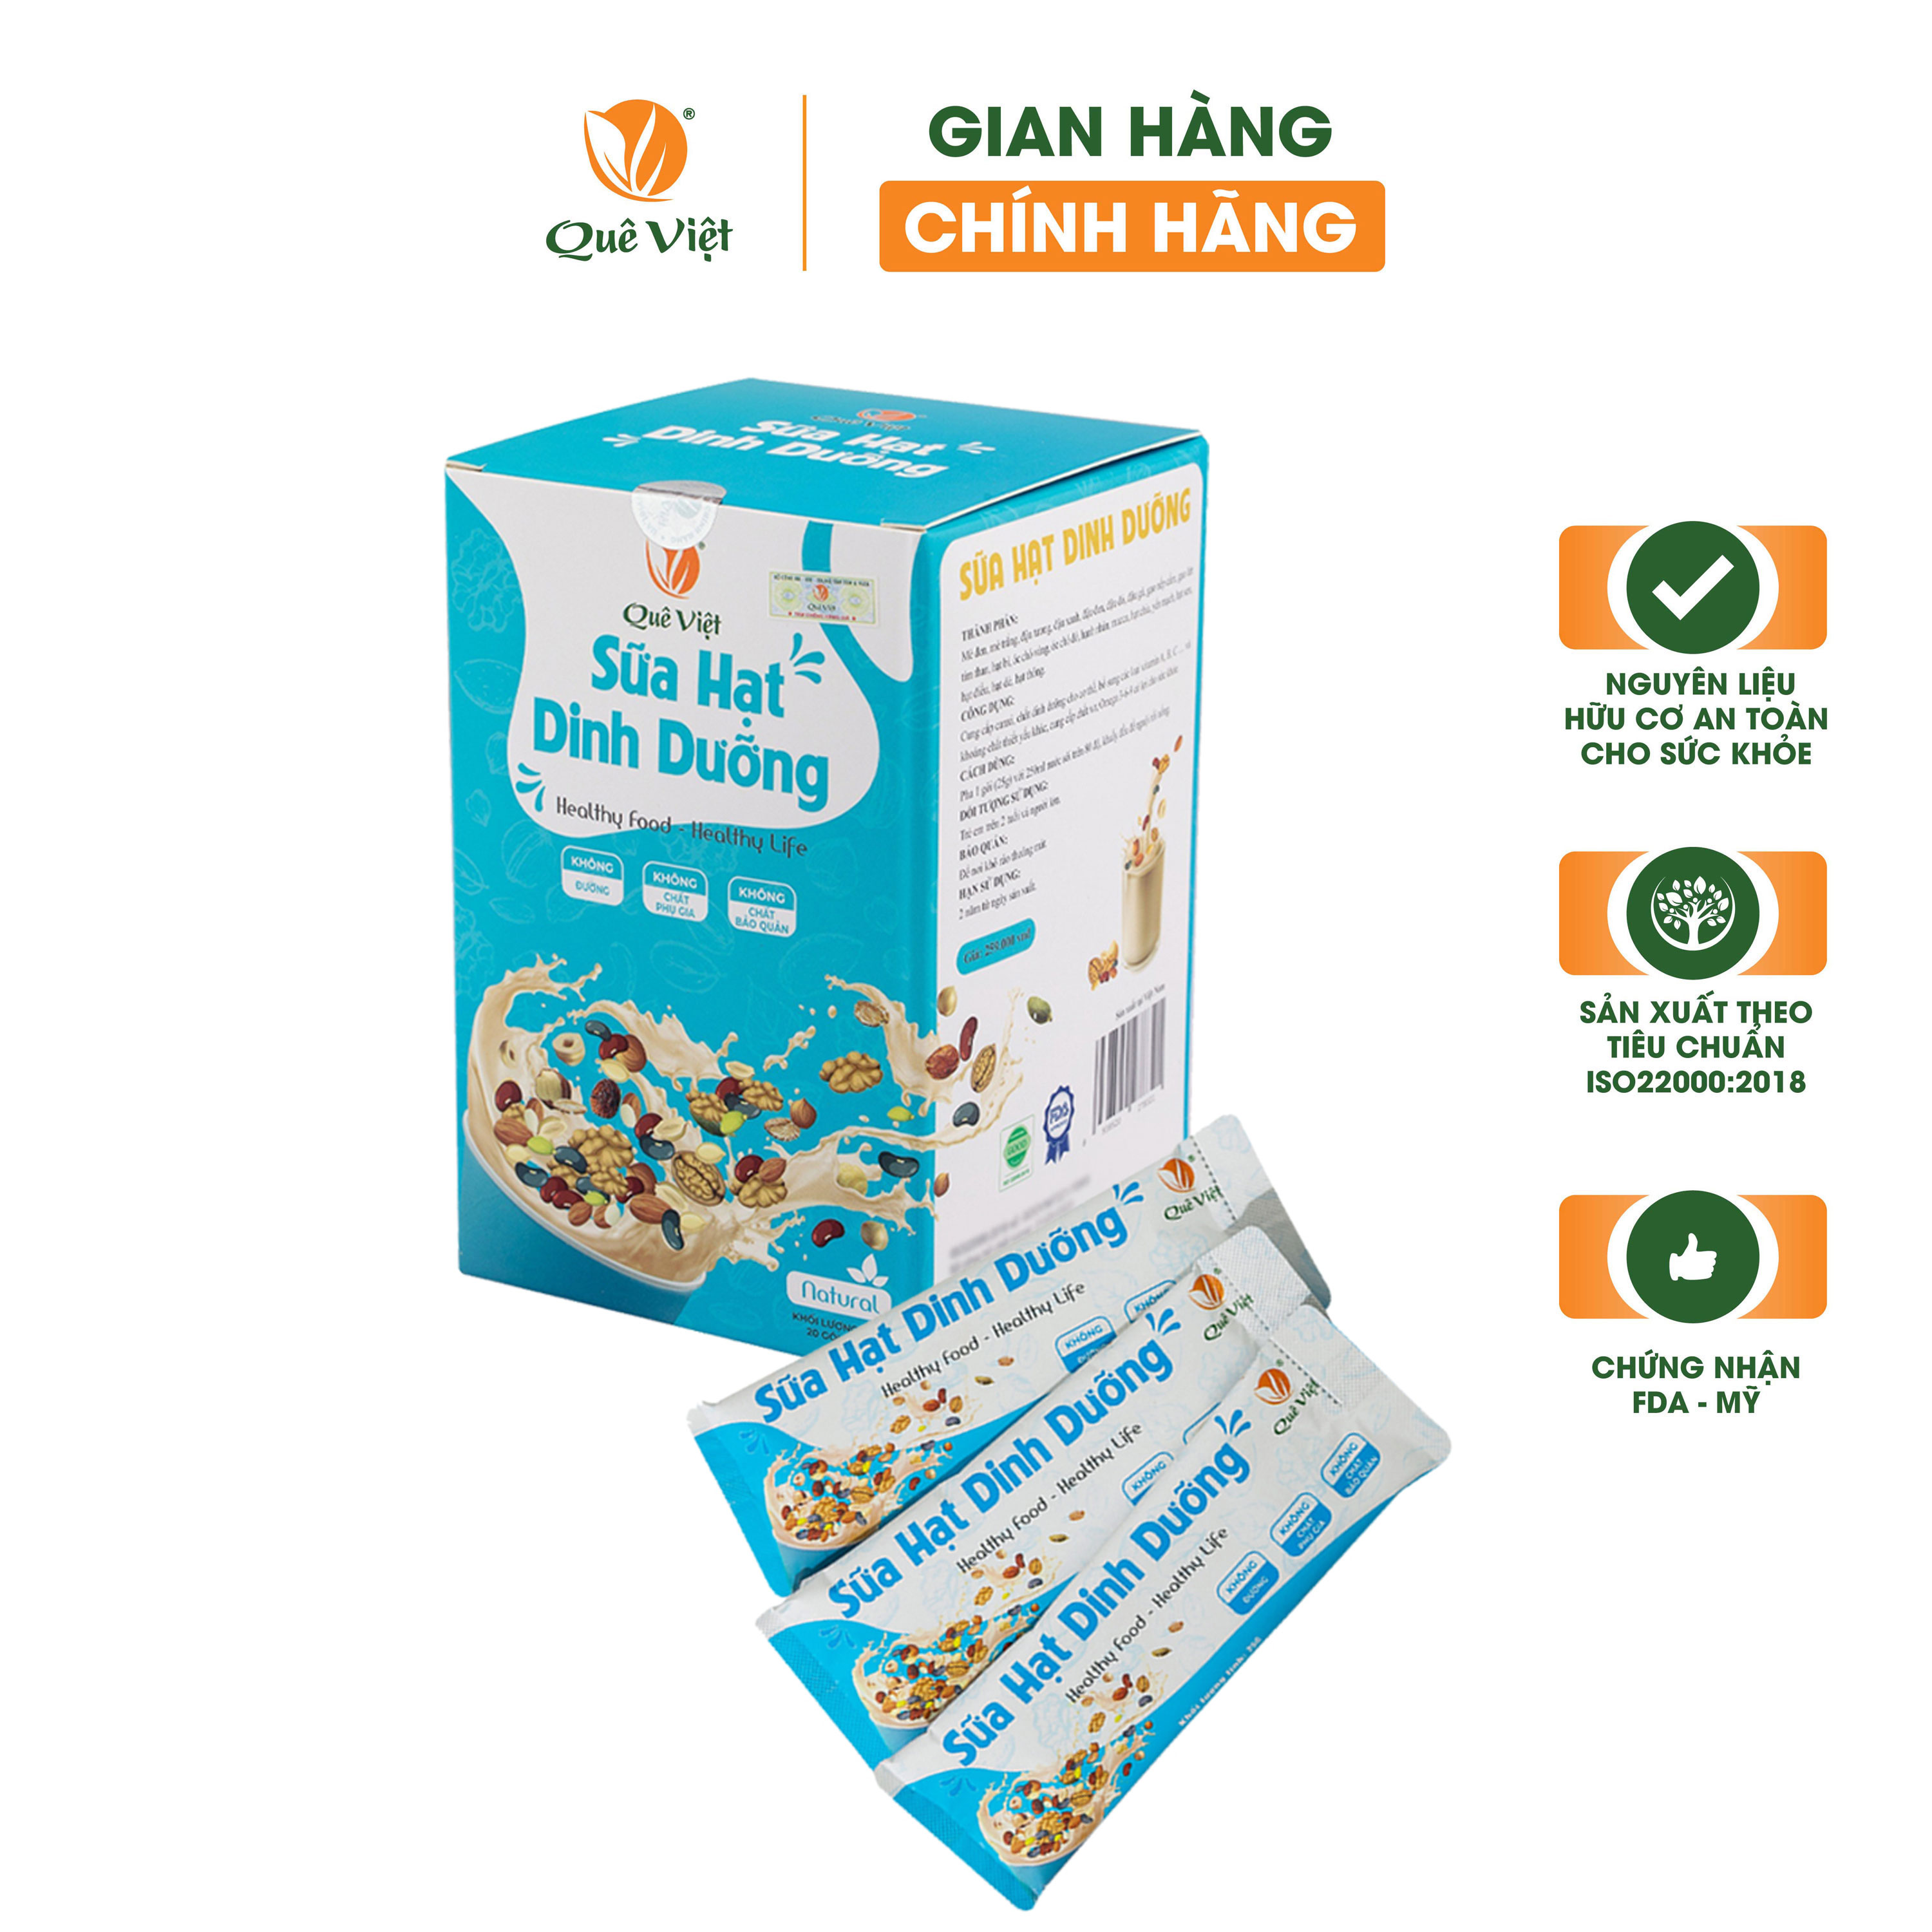 Sữa hạt dinh dưỡng Quê Việt - Hộp 500G (20 túi x 25G)